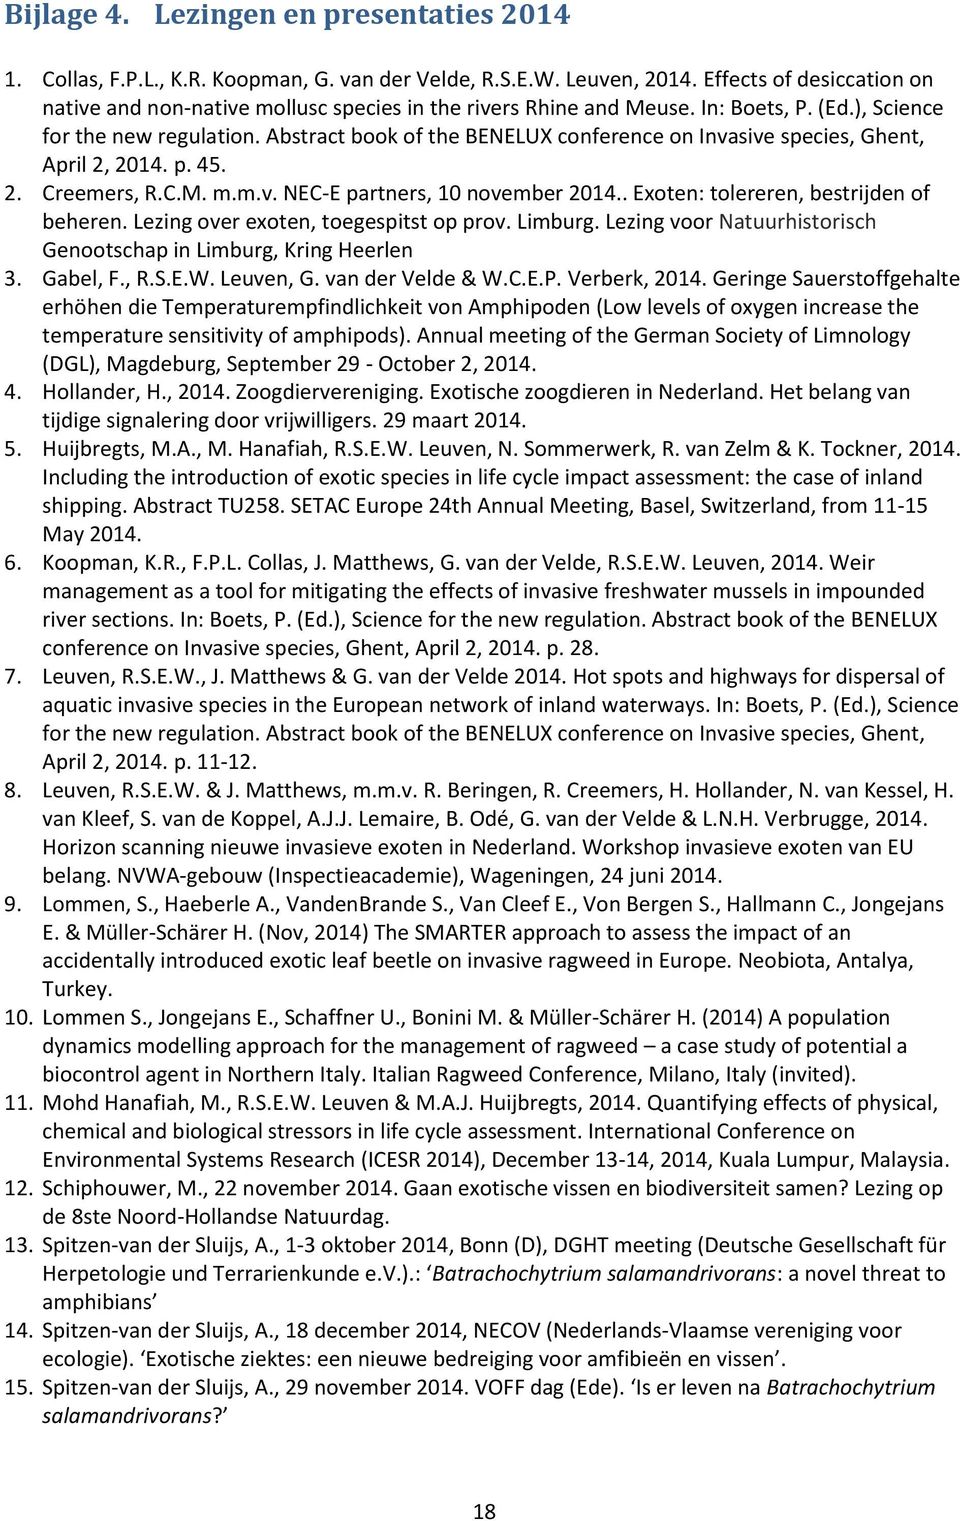 Abstract book of the BENELUX conference on Invasive species, Ghent, April 2, 2014. p. 45. 2. Creemers, R.C.M. m.m.v. NEC-E partners, 10 november 2014.. Exoten: tolereren, bestrijden of beheren.